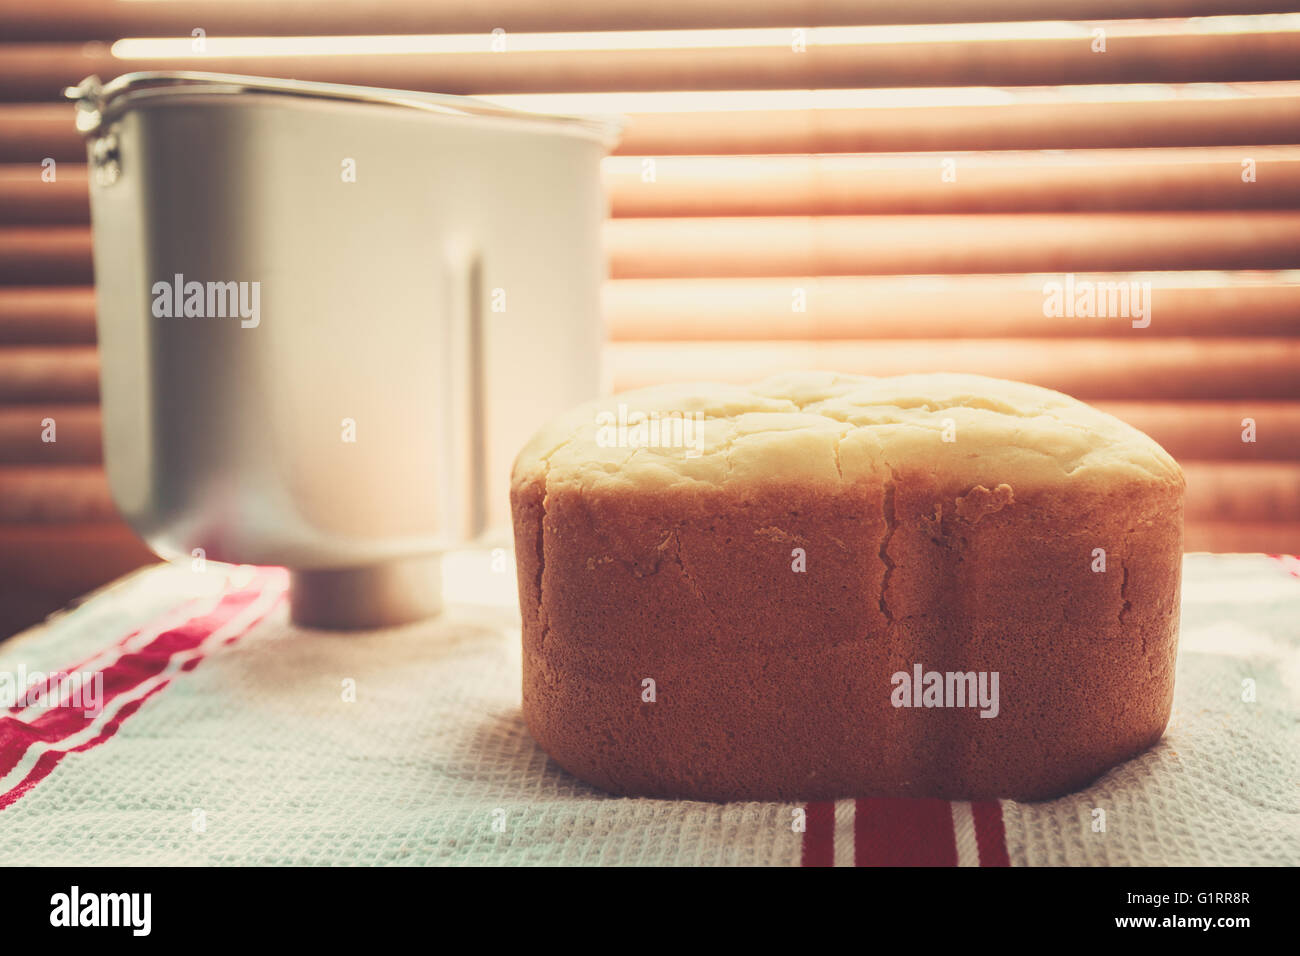 Una hogaza de pan recién horneado y una panificadora de estaño por la ventana bañado por los rayos del sol Foto de stock